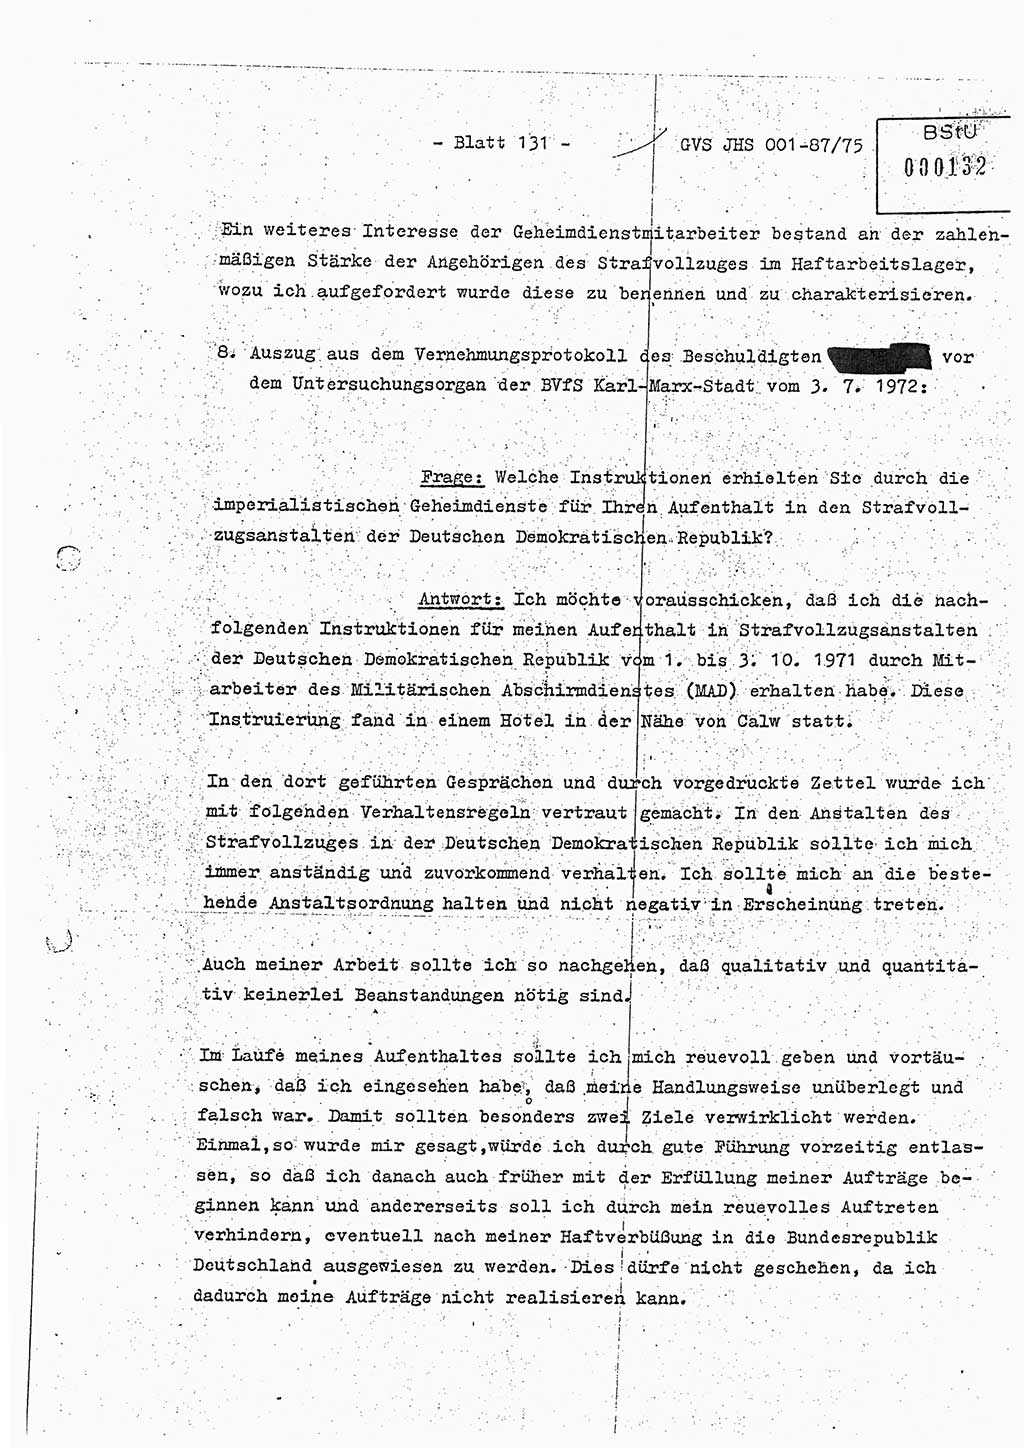 Diplomarbeit Hauptmann Volkmar Heinz (Abt. ⅩⅣ), Oberleutnant Lothar Rüdiger (BV Lpz. Abt. Ⅺ), Ministerium für Staatssicherheit (MfS) [Deutsche Demokratische Republik (DDR)], Juristische Hochschule (JHS), Geheime Verschlußsache (GVS) o001-87/75, Potsdam 1975, Seite 131 (Dipl.-Arb. MfS DDR JHS GVS o001-87/75 1975, S. 131)